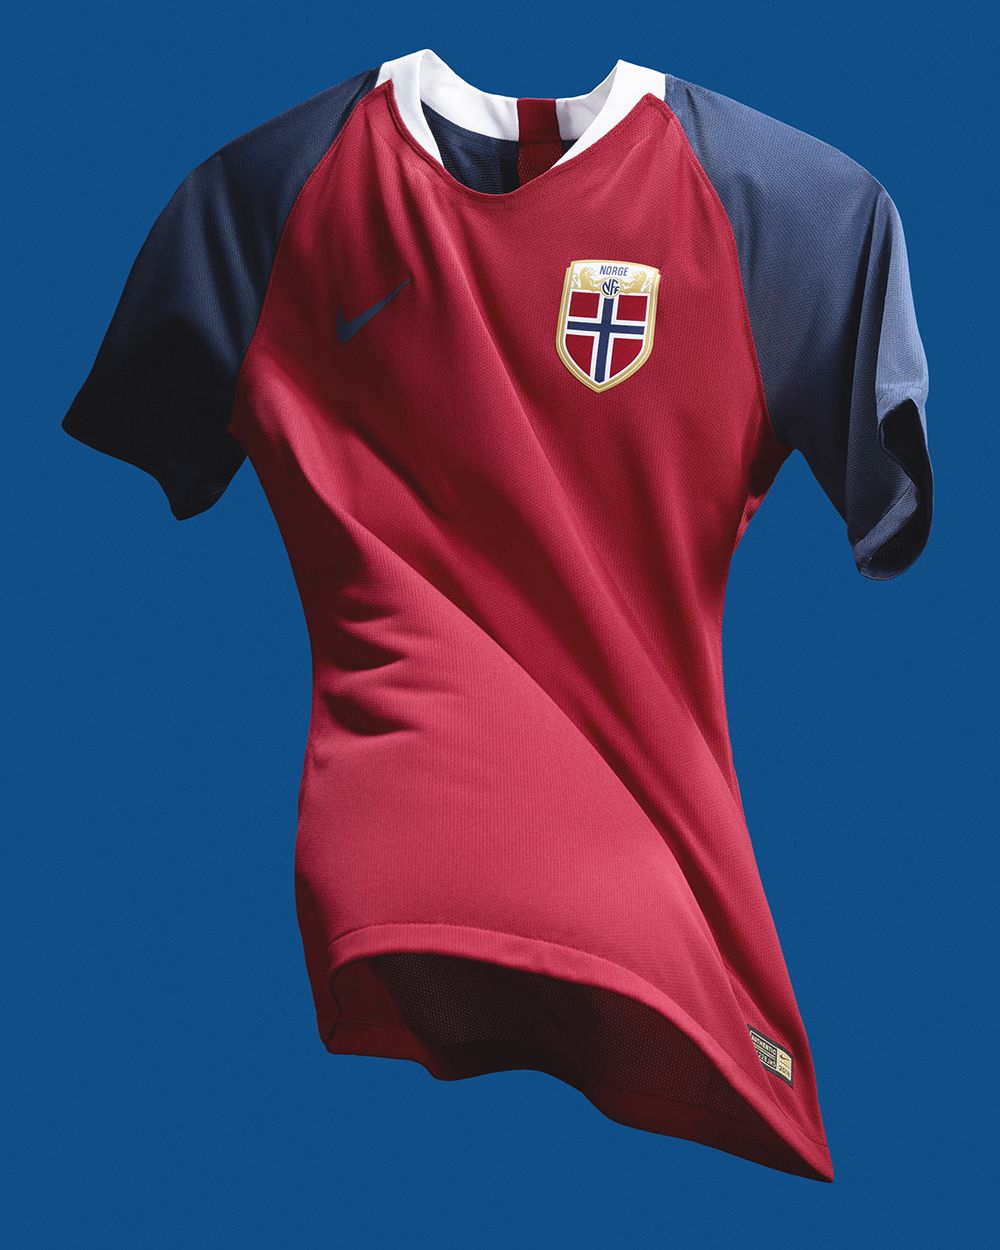 Camiseta Nike de Noruega 2018